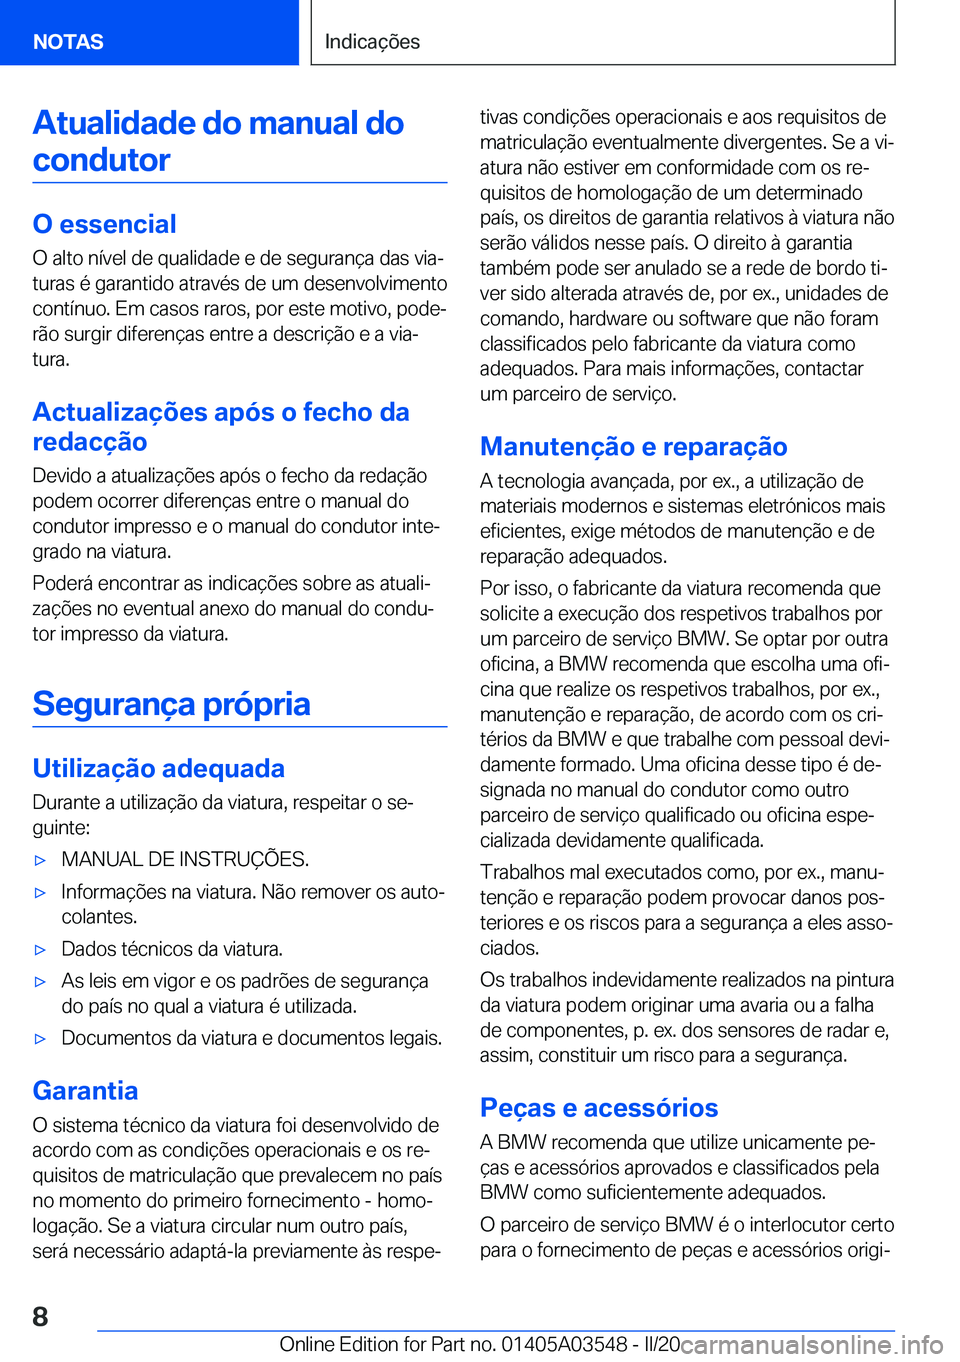 BMW X3 PLUG IN HYBRID 2020  Manual do condutor (in Portuguese) �A�t�u�a�l�i�d�a�d�e��d�o��m�a�n�u�a�l��d�o�c�o�n�d�u�t�o�r
�O��e�s�s�e�n�c�i�a�l
�O��a�l�t�o��n�